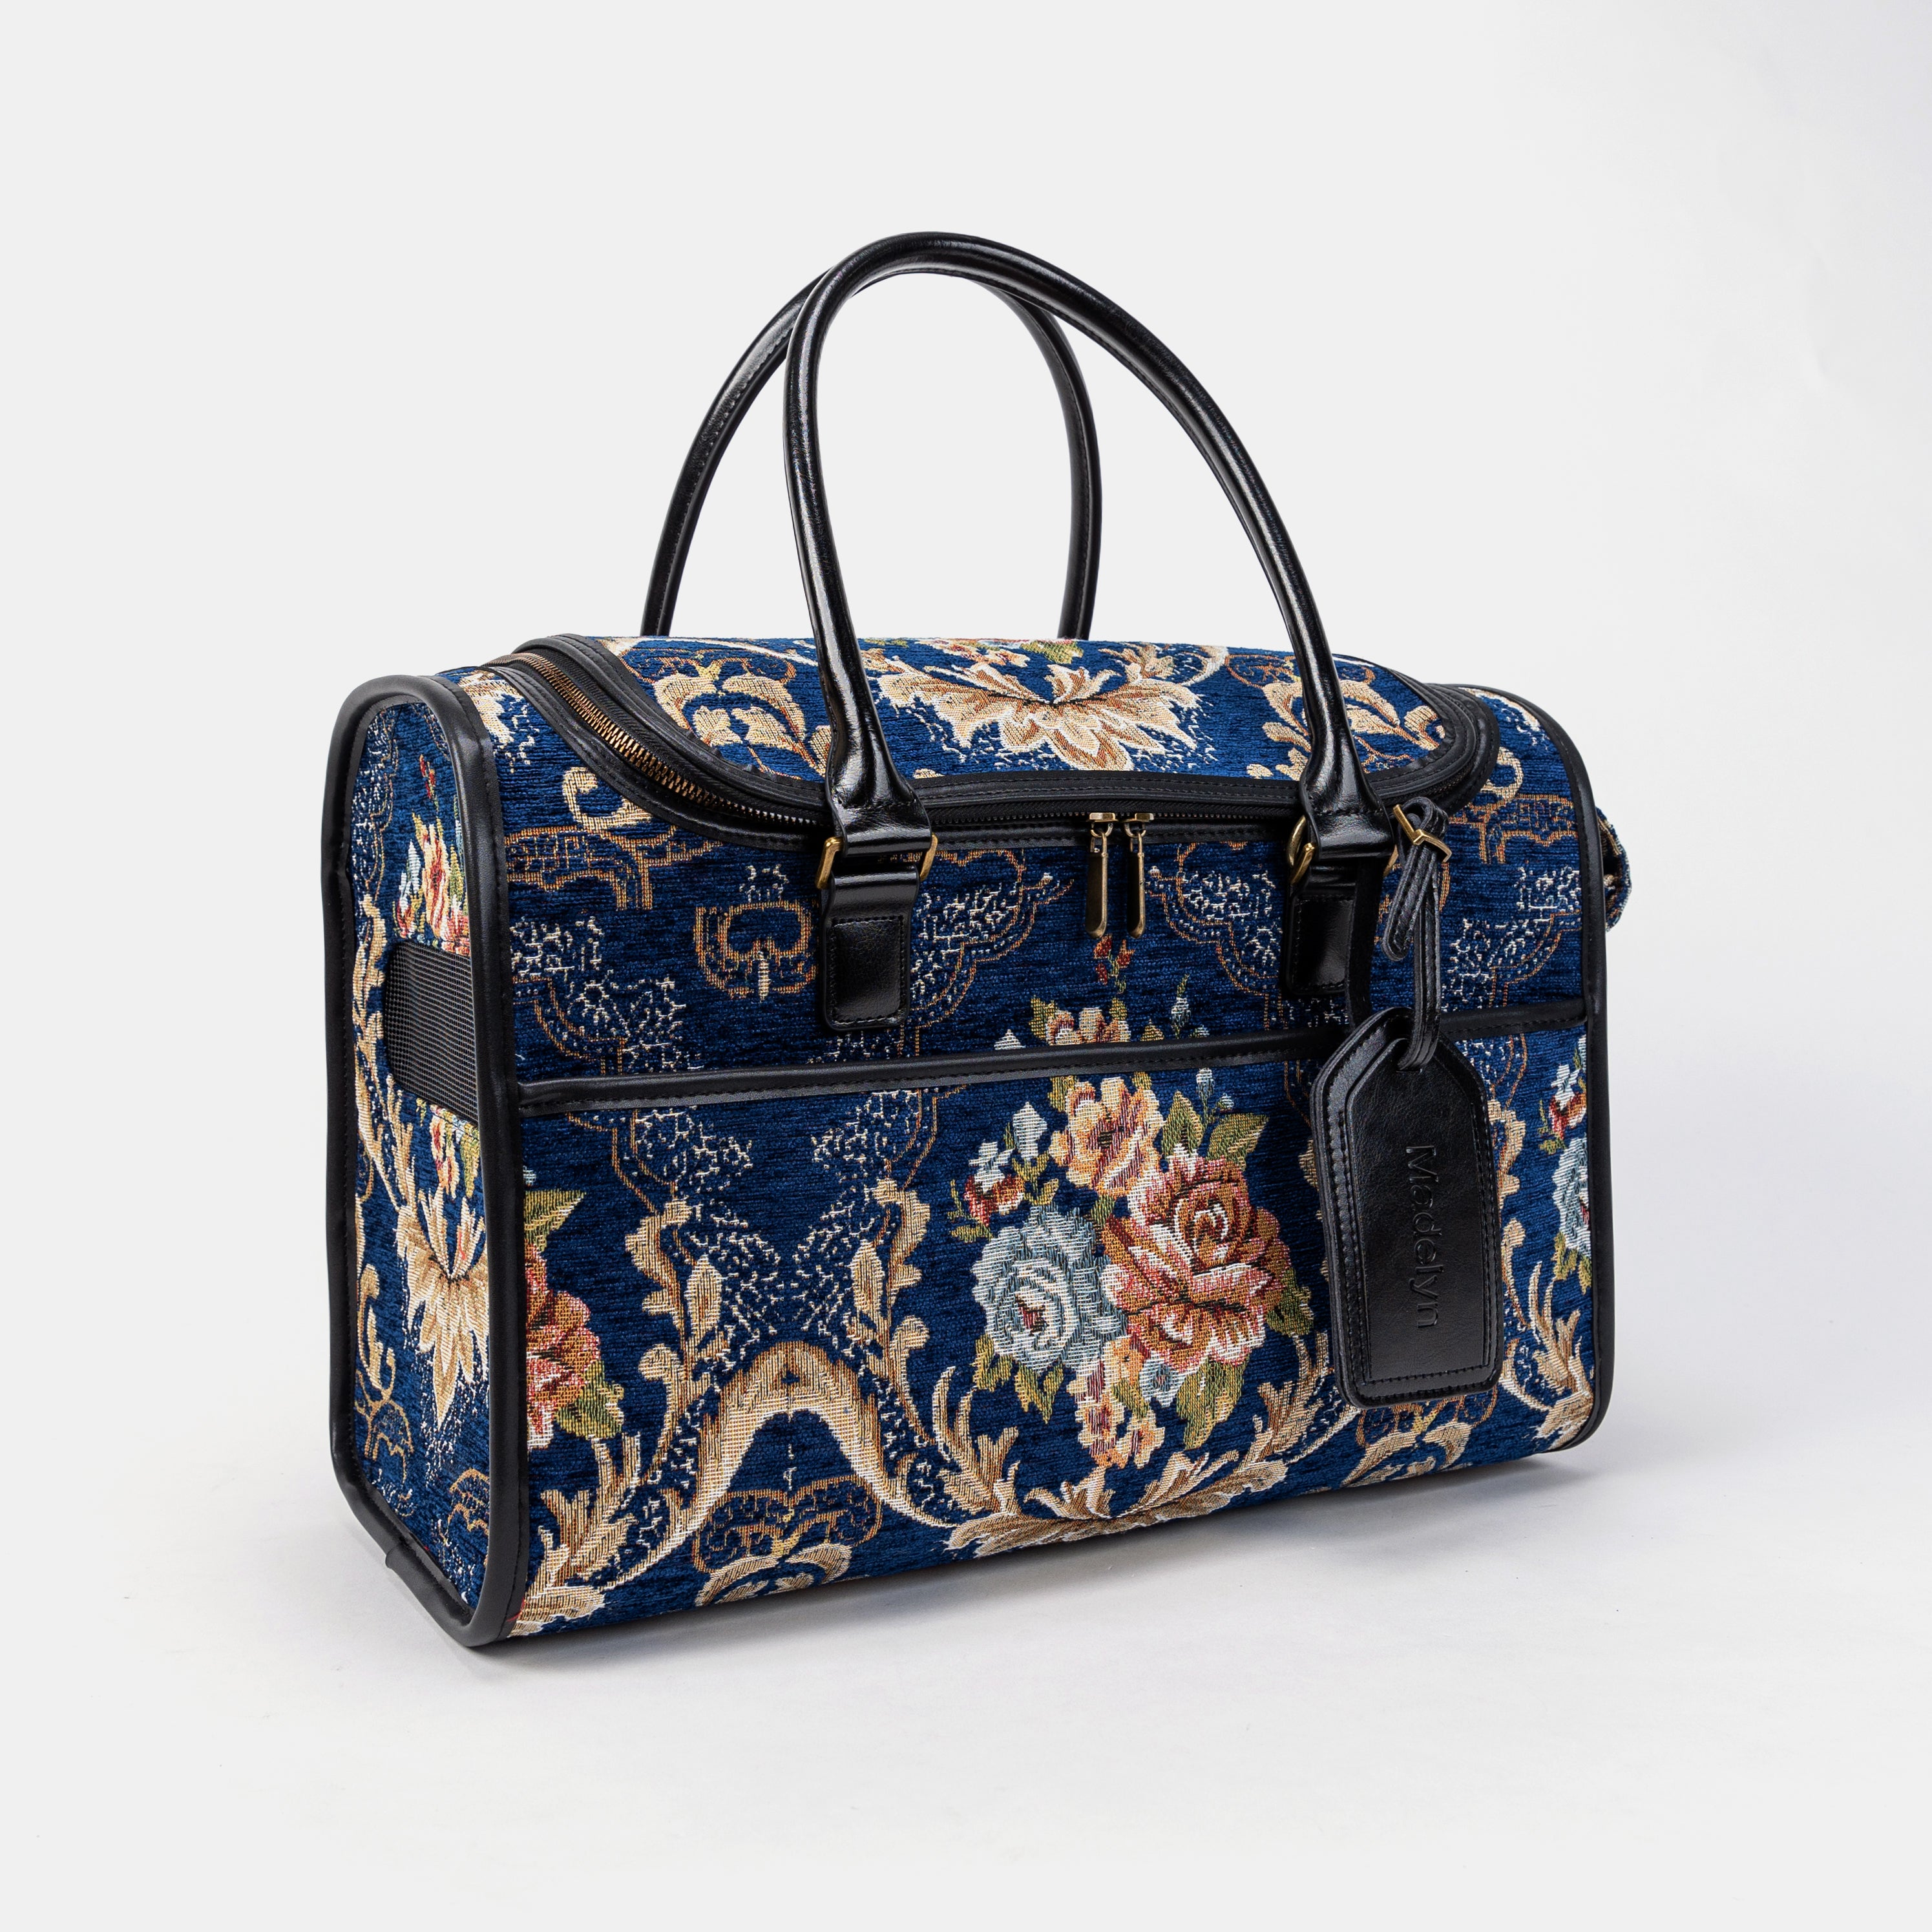 Travel Dog Carrier Bag Floral Blue Overview